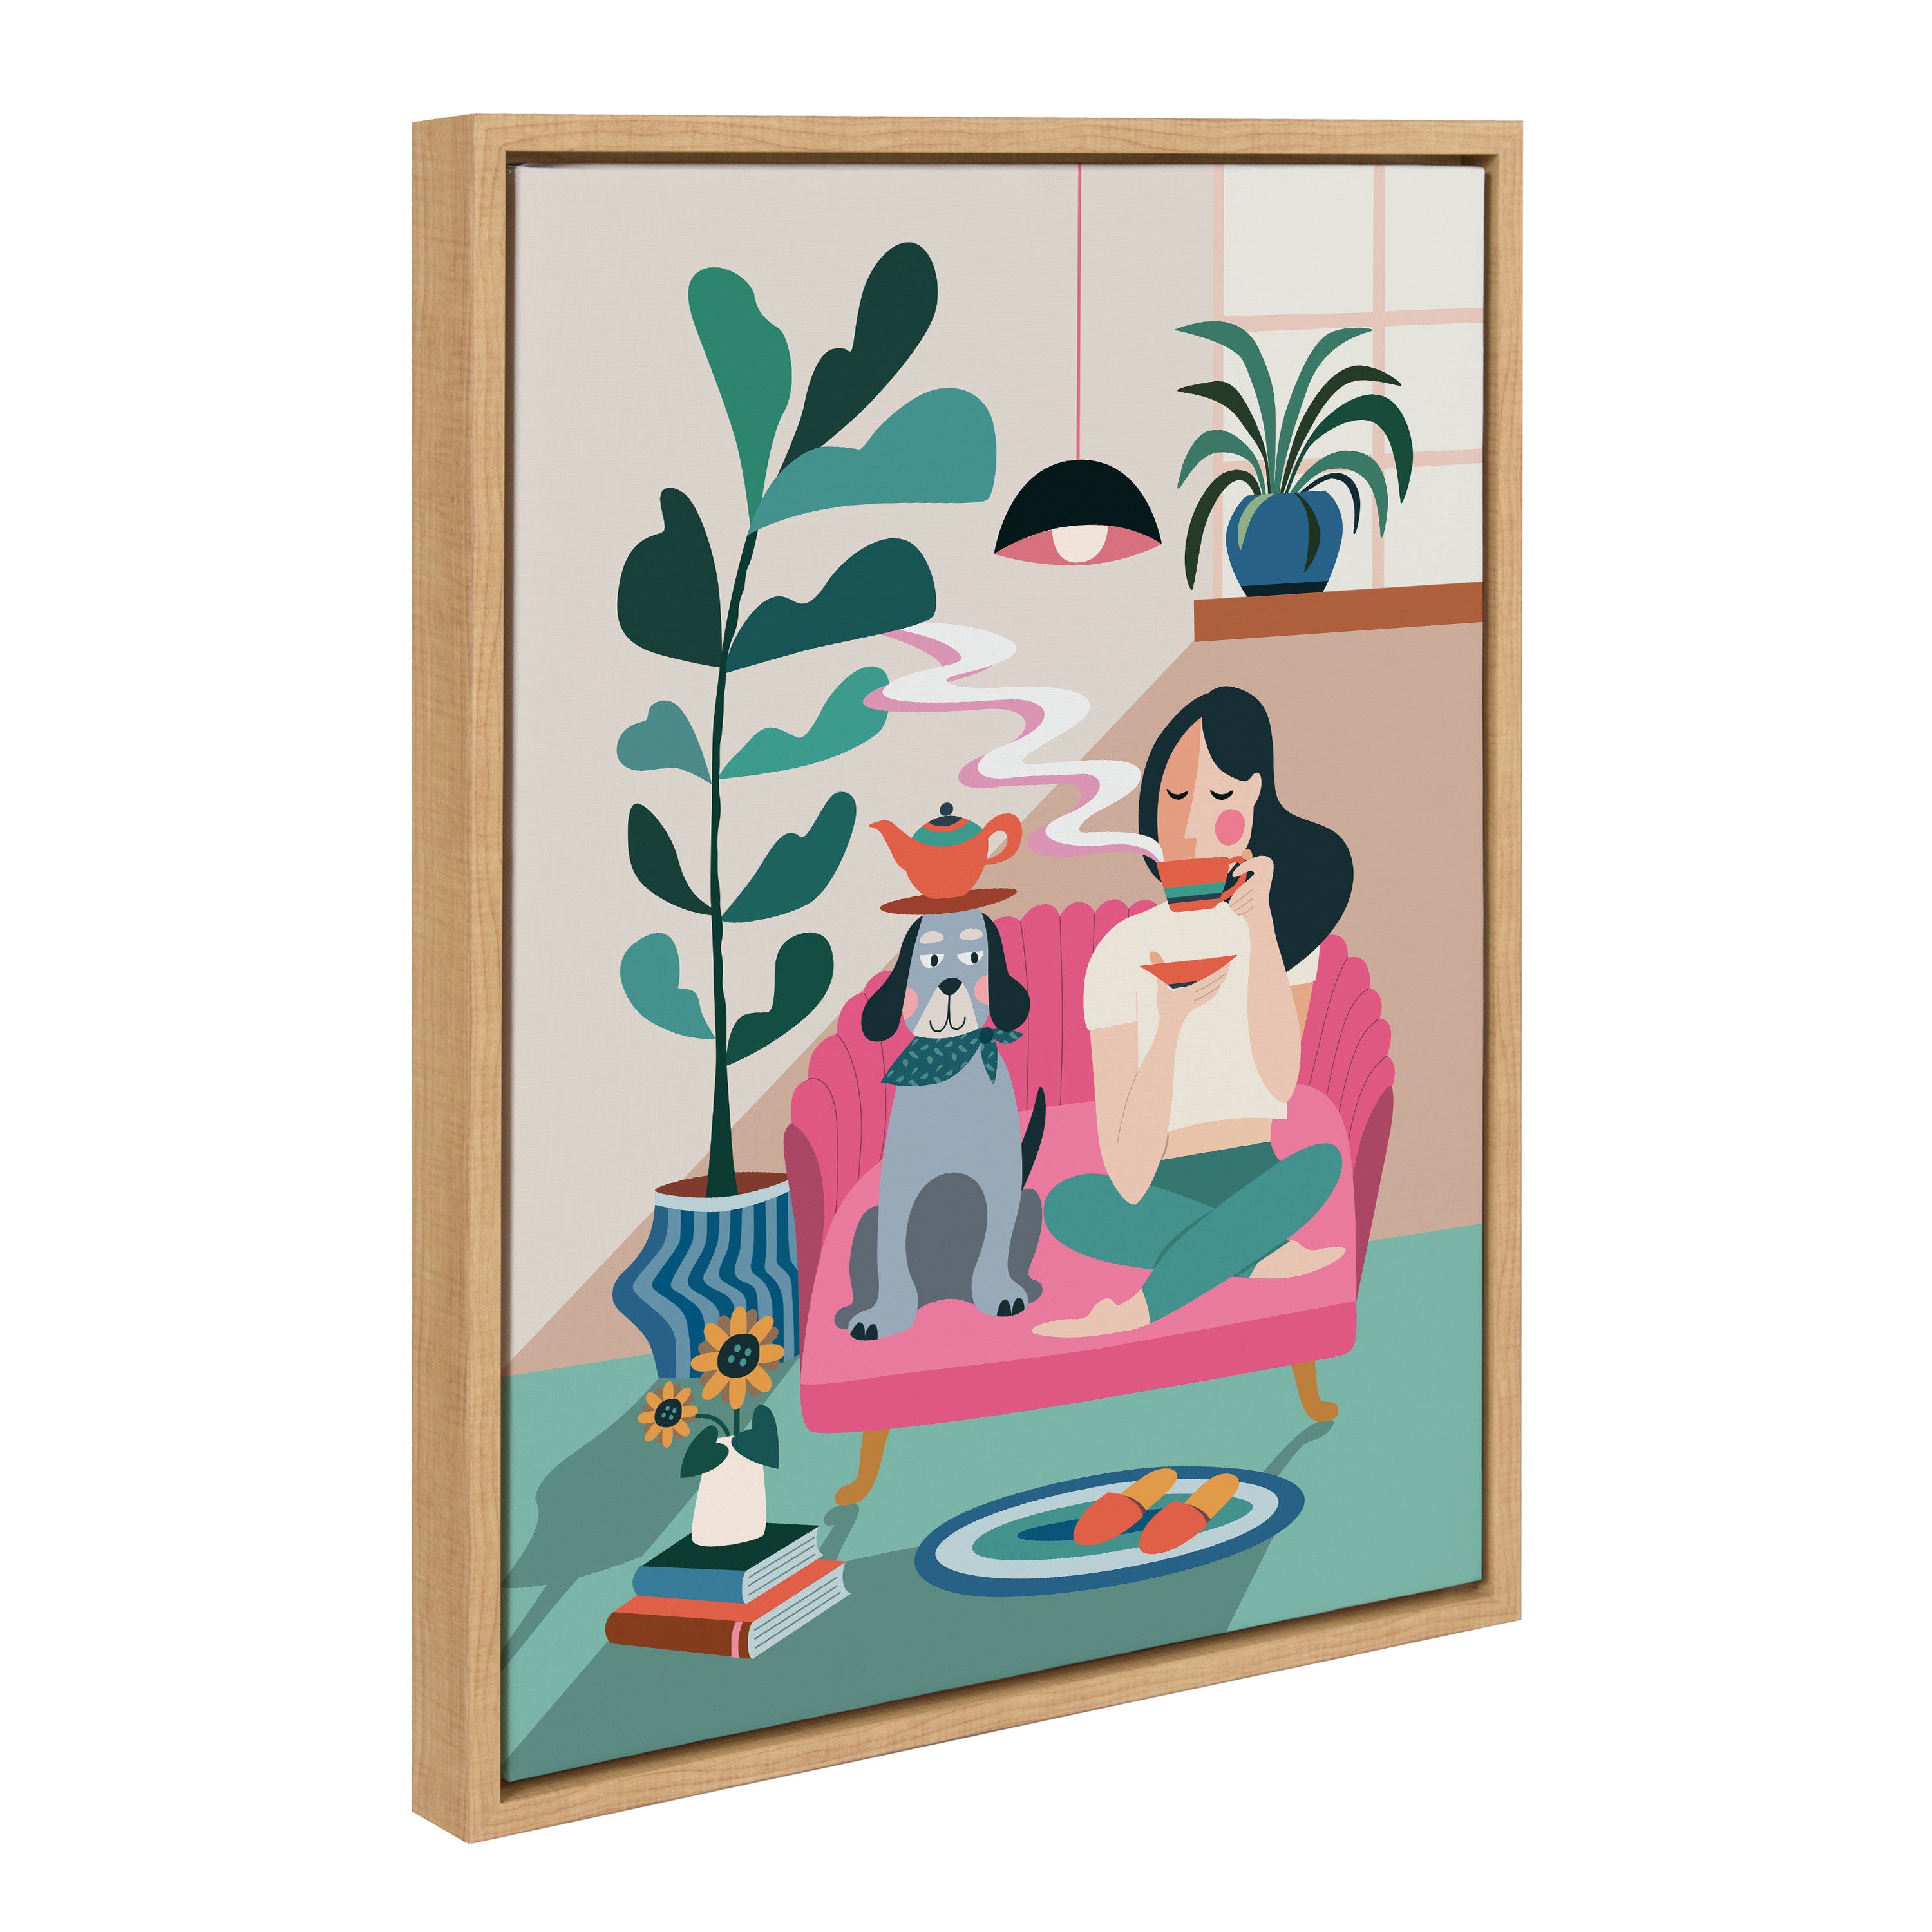 Sylvie Mid Century Modern Tea Time Framed Canvas by Rachel Lee of My Dream Wall